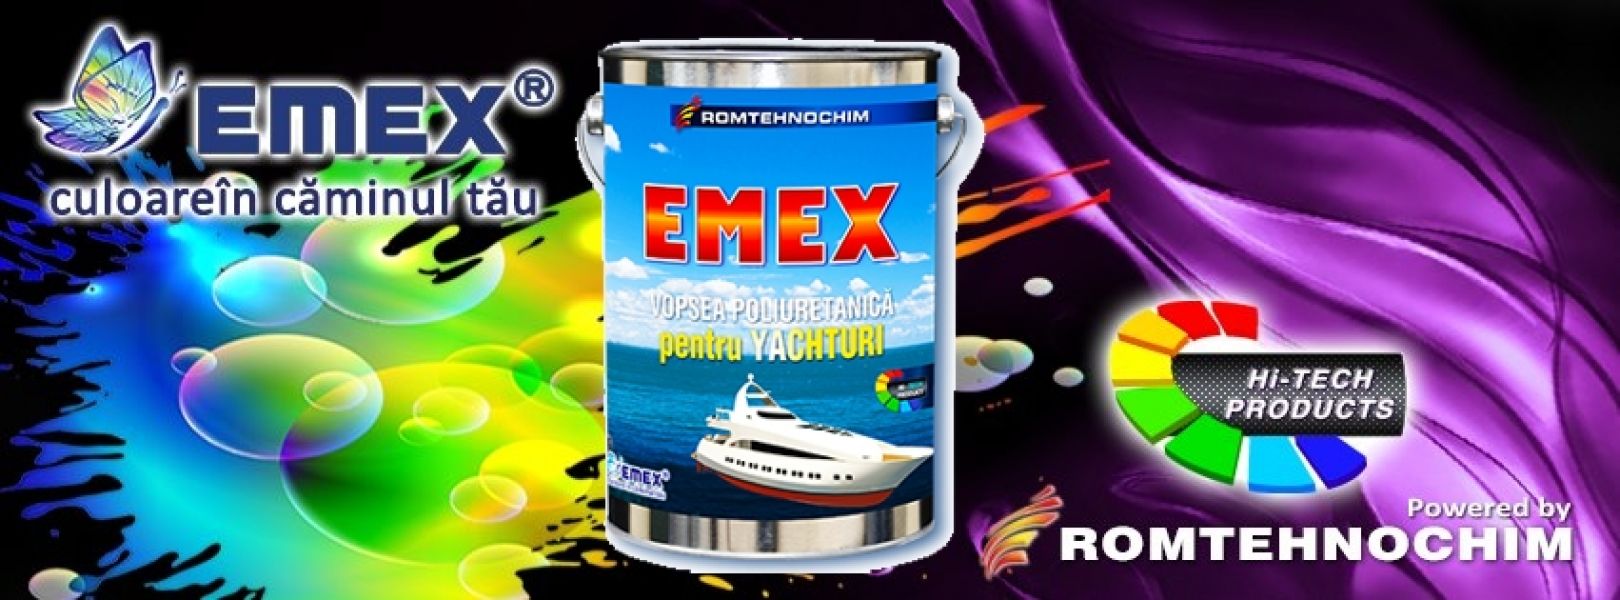 Vopsea Poliuretanica pentru Yachturi EMEX - 22 Ron/Kg – Gri